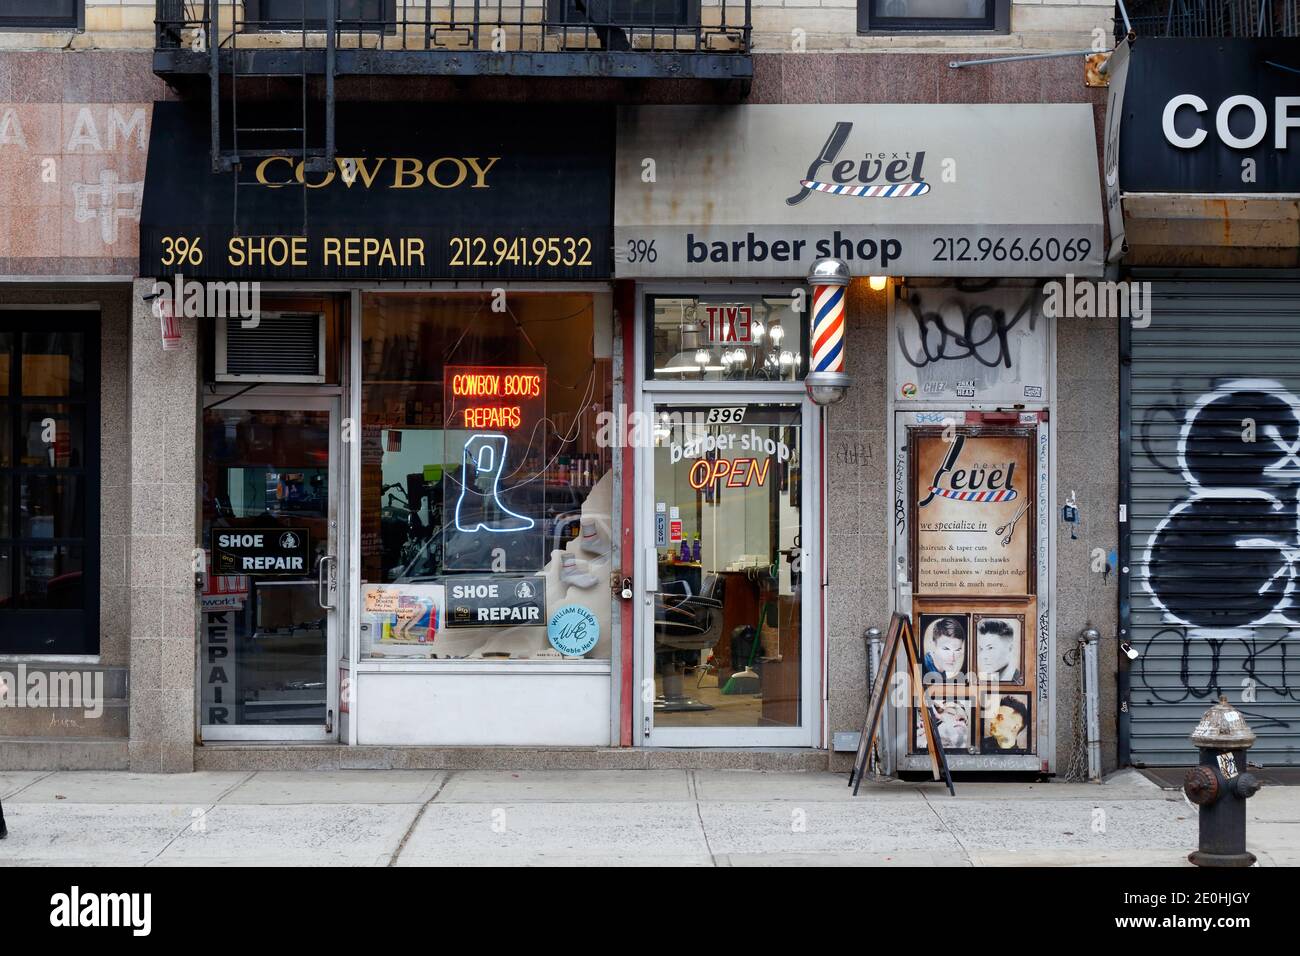 Cowboy Shoe Repair, Next Level Barber Shop, 396 Broome St, New York, NYC Foto von einer Schuhwerkstatt und einem Friseurladen in SoHo. Stockfoto